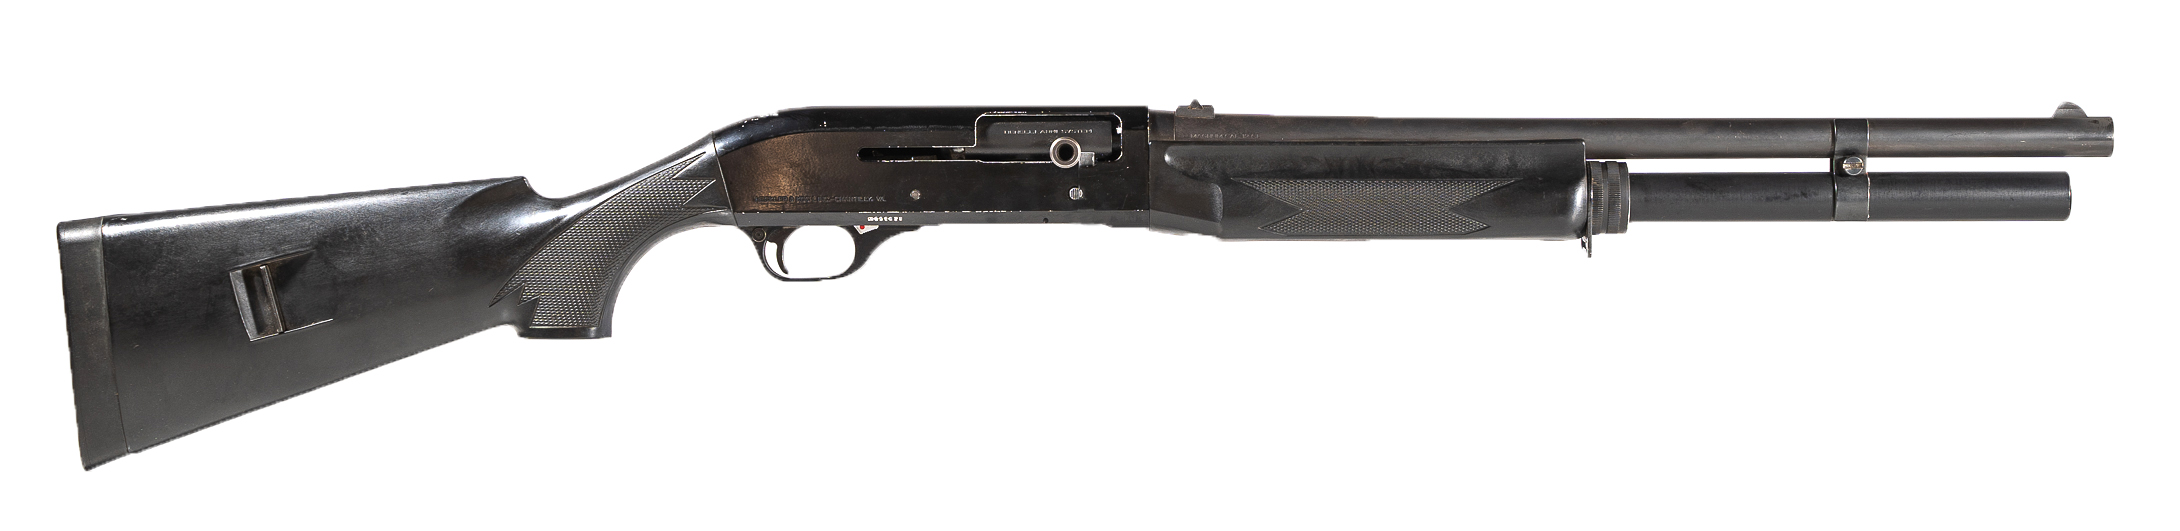 Benelli M1 Semi-Automatic 12ga Shotgun (code S006)-image